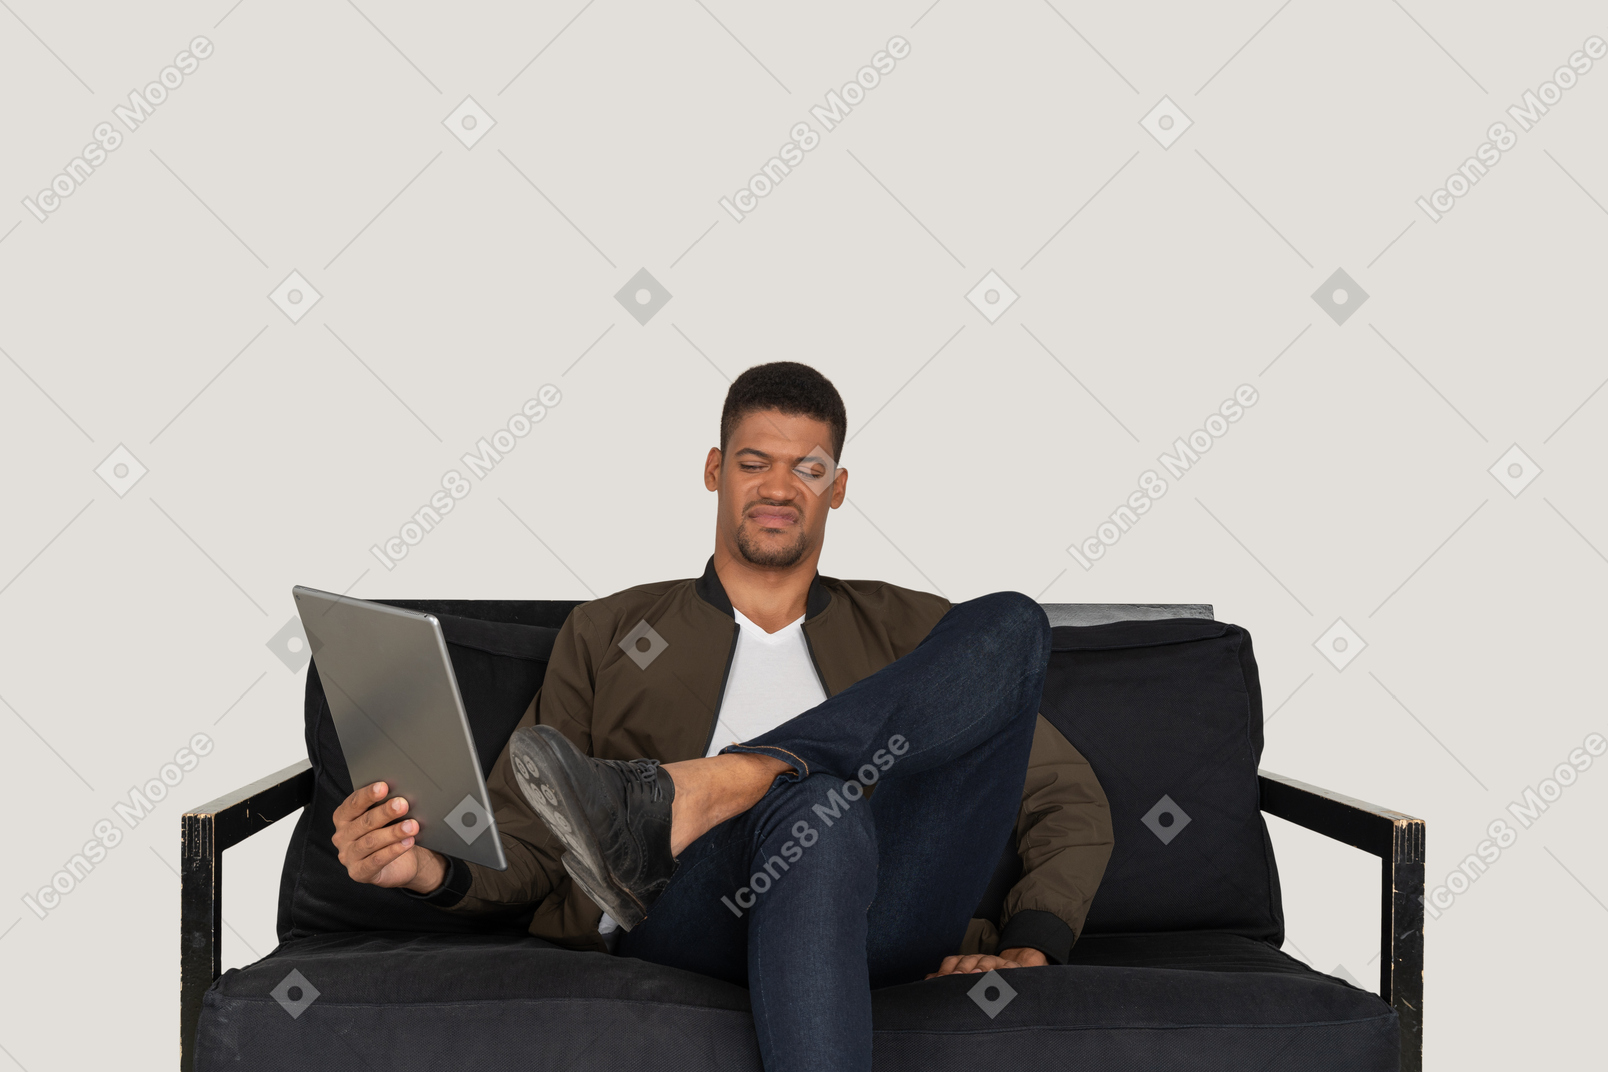 Vista frontale di un giovane che fa una smorfia seduto su un divano